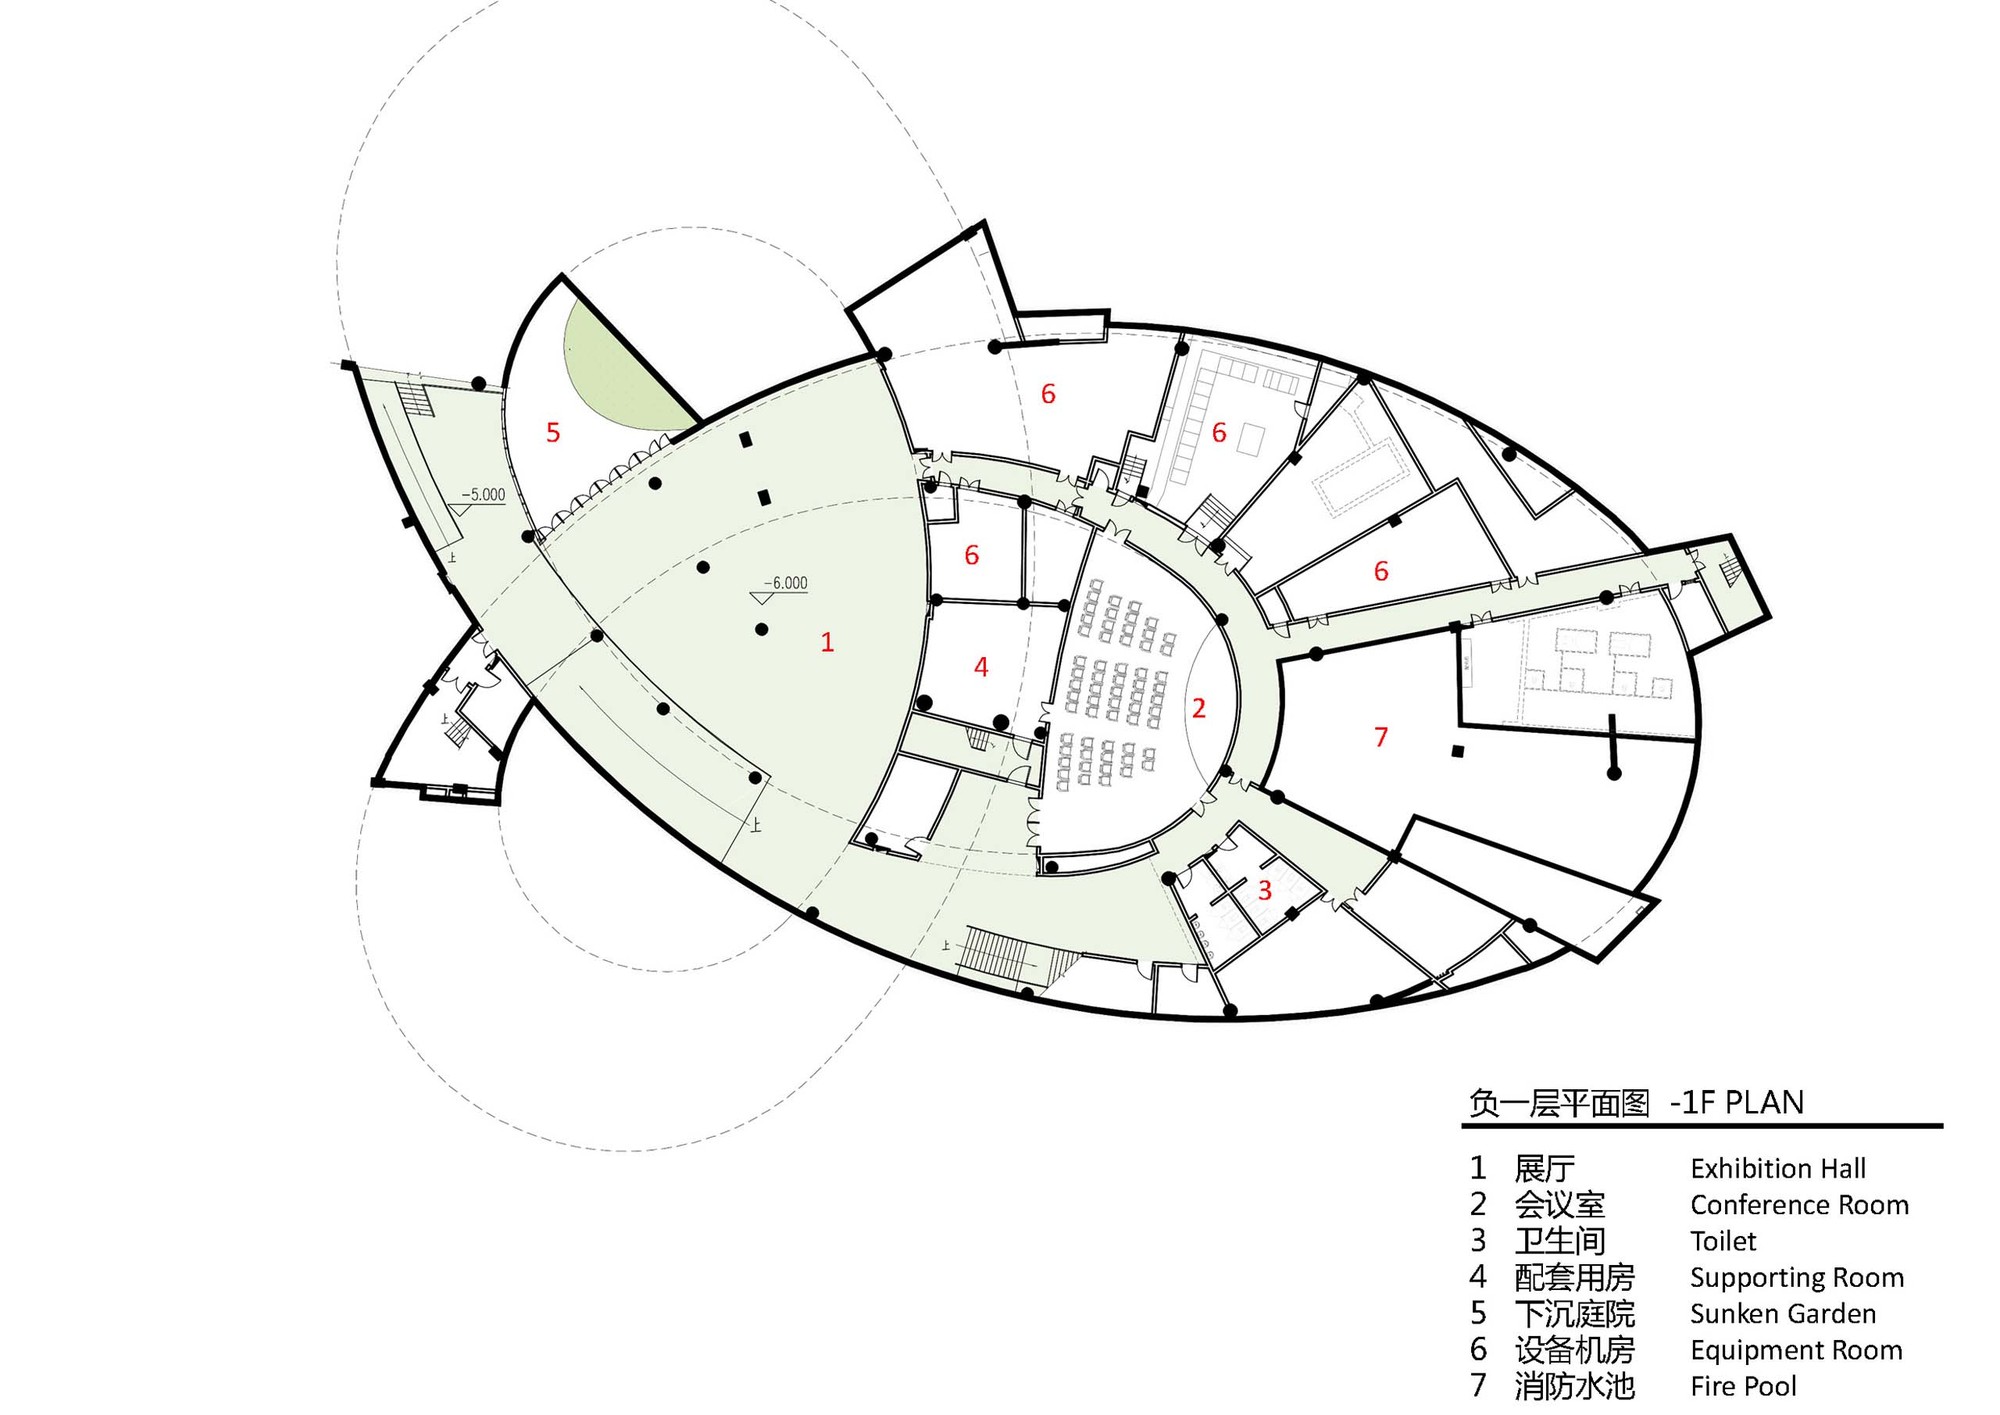 大熊猫国家公园雅安科普教育中心 / 中国建筑西南设计研究院